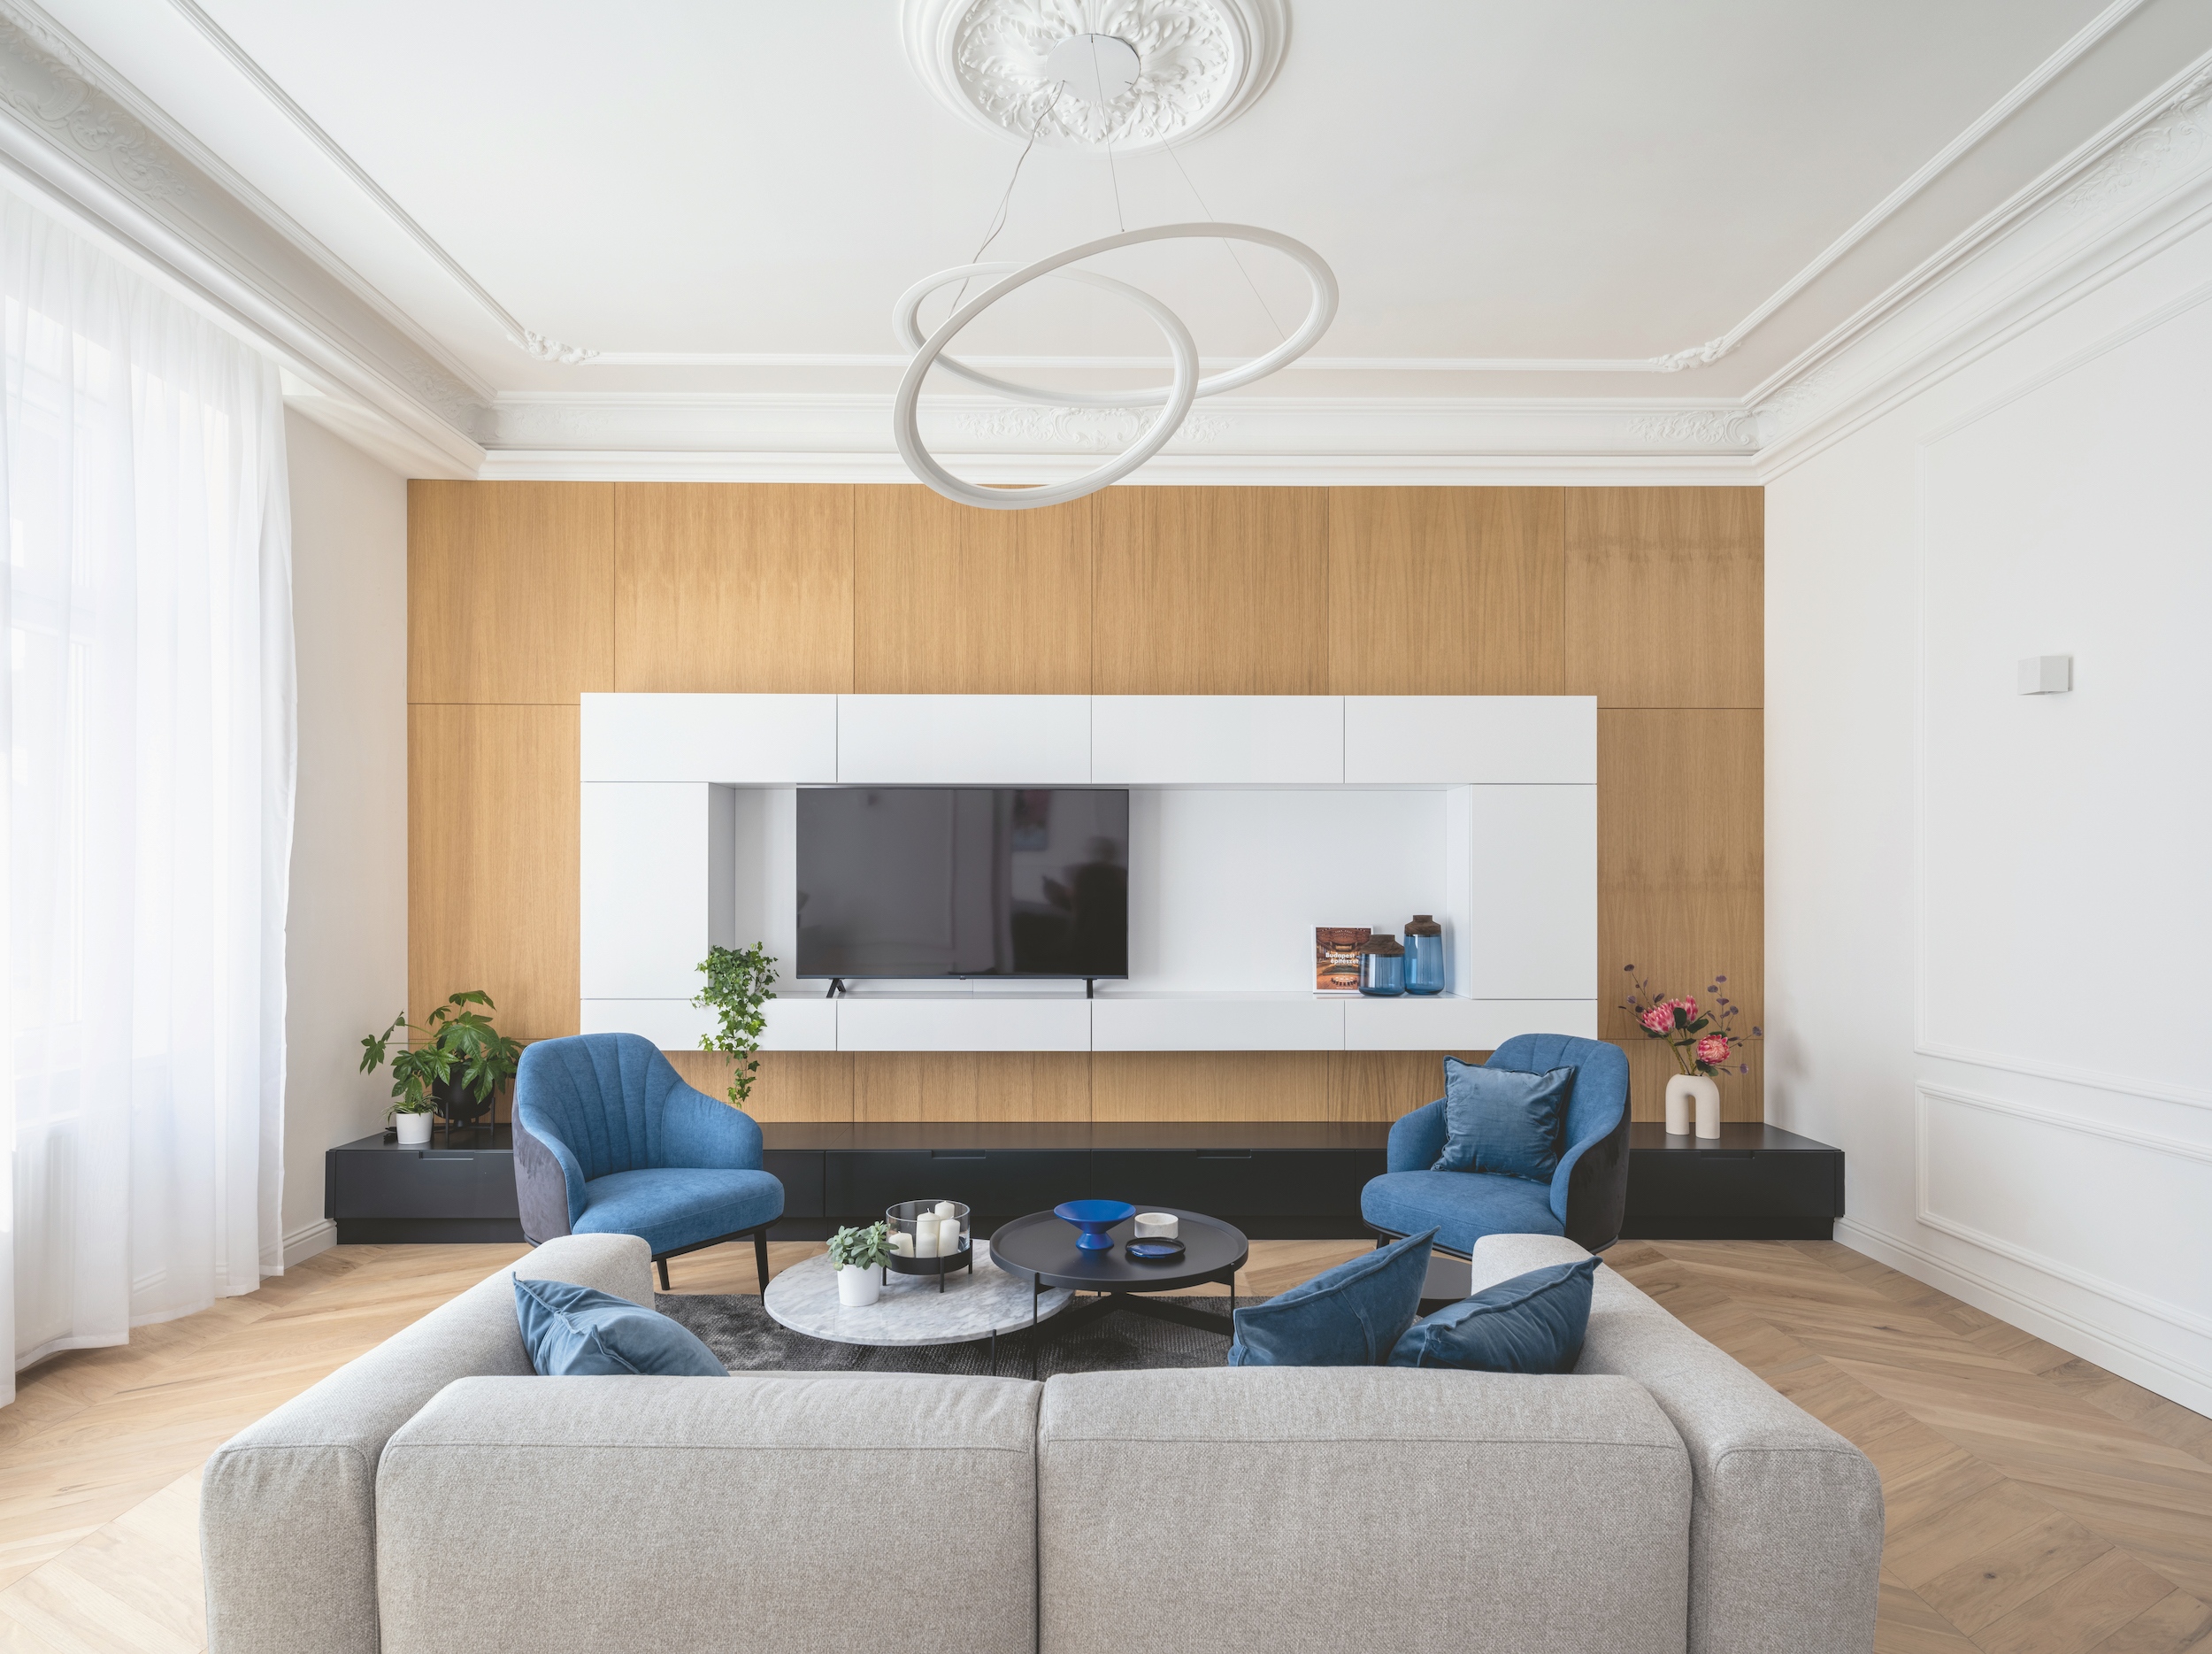 Nappali egy 13. kerületi magánlakásban, modern és klasszikus elemekkel, egy-egy fókuszponttal, amit itt a nappali tévéfala határoz meg – Fotó: Palkó György